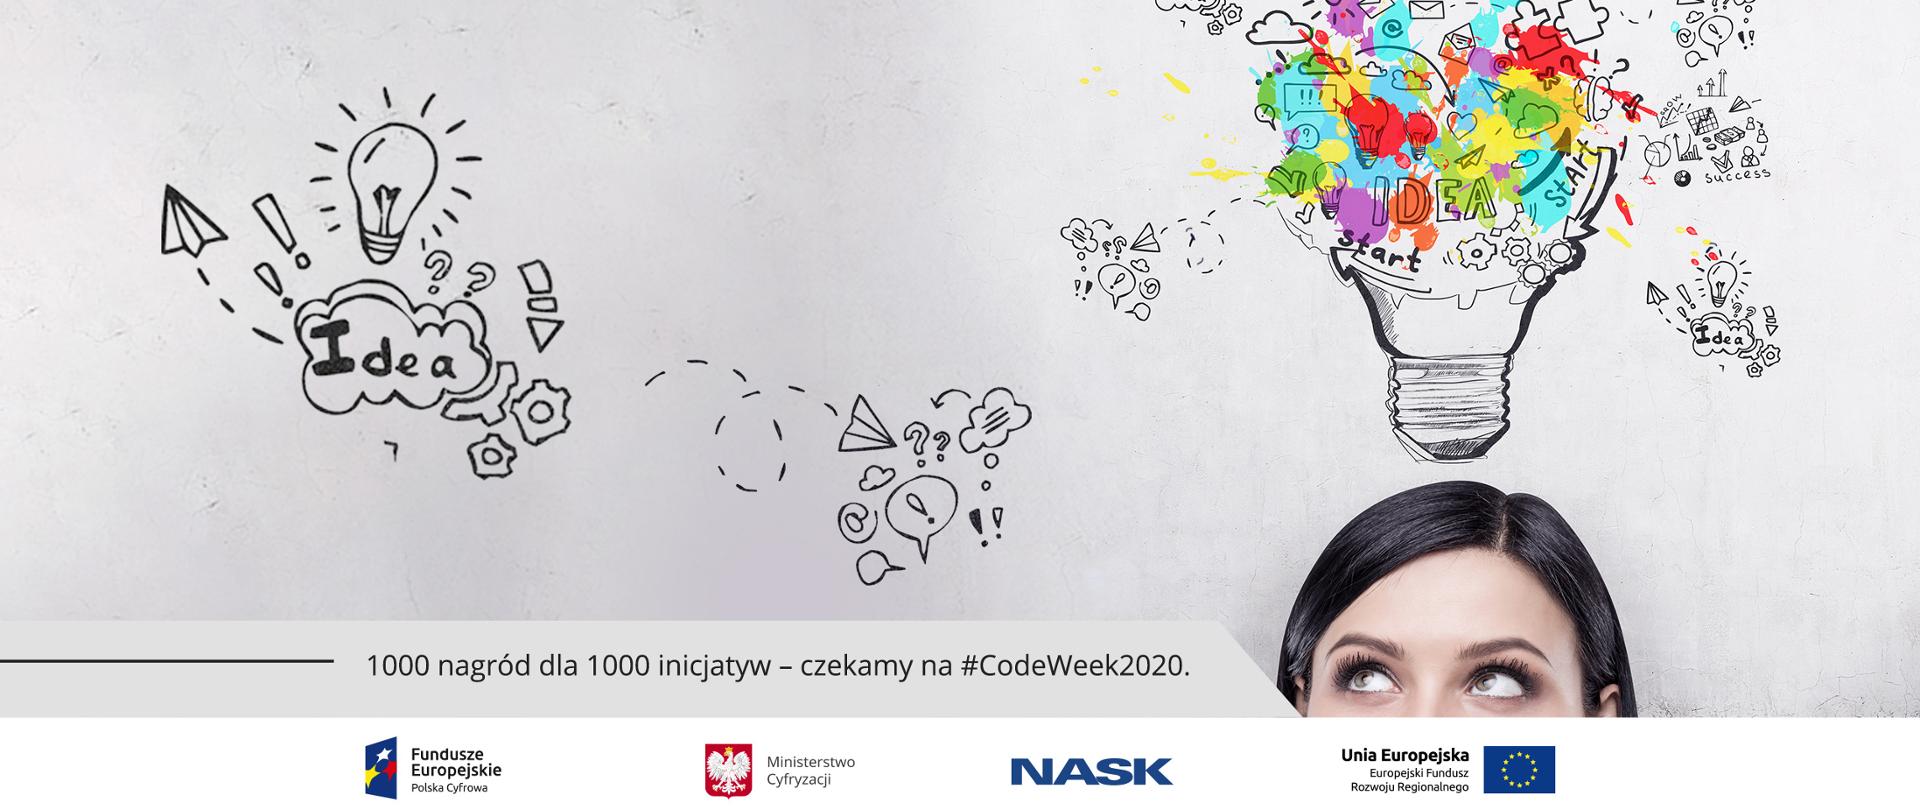 1000 nagród na 1000 inicjatyw - czekamy na CodeWeek2020 - napis na grafice. Logotypy FE, MC, NASK i UE. Na szarym tle oczy dziewczyny patrzącej w gróre i rysunki żarówek i napis "idea". Z żarówki wystają kolorowe fragmenty.